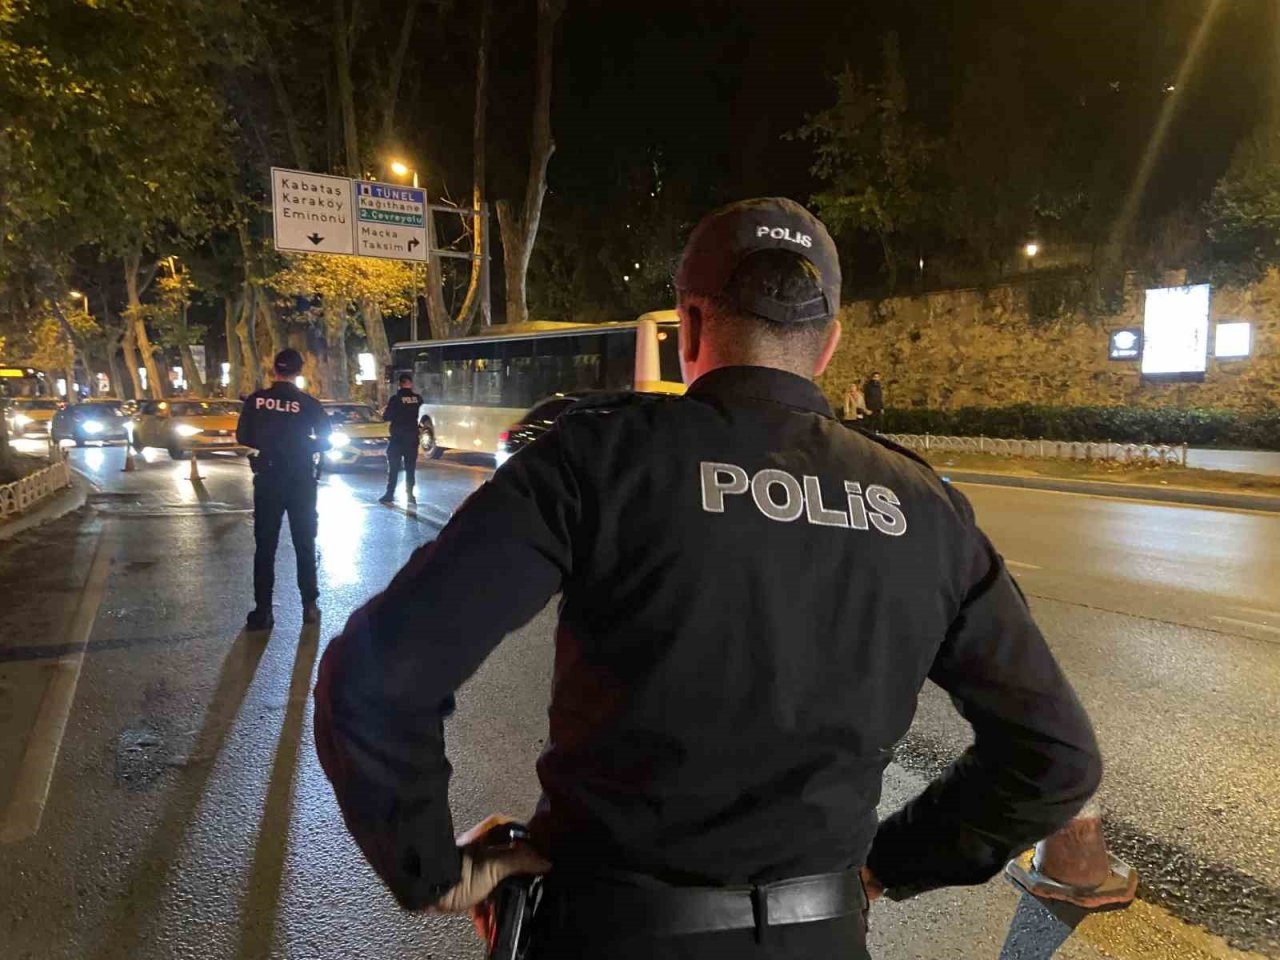 İstanbul’da motosiklet sürücülerine yönelik asayiş uygulaması